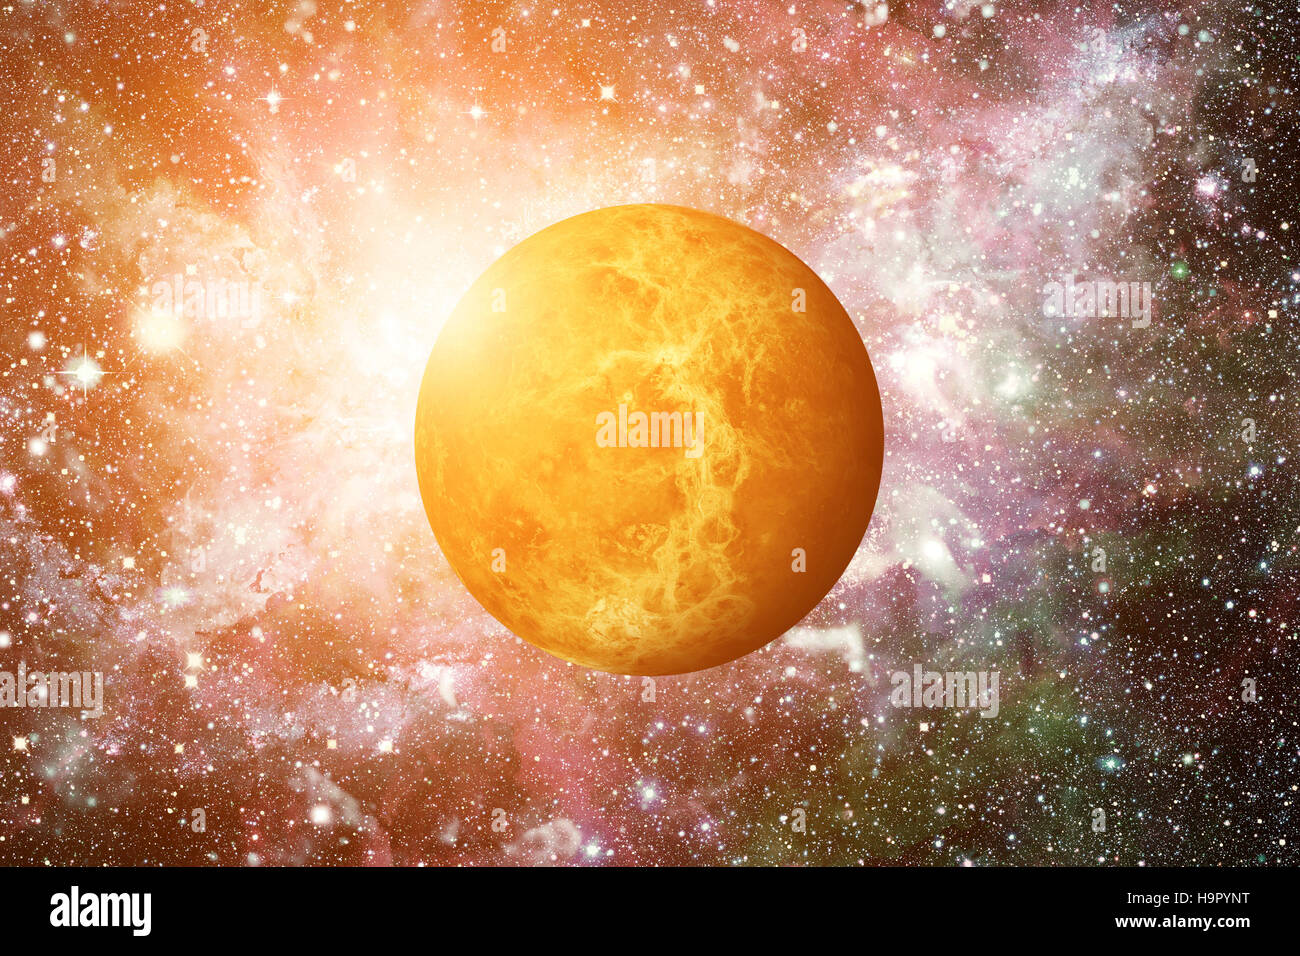 La planète Vénus. Éléments de cette image fournie par la NASA. Banque D'Images